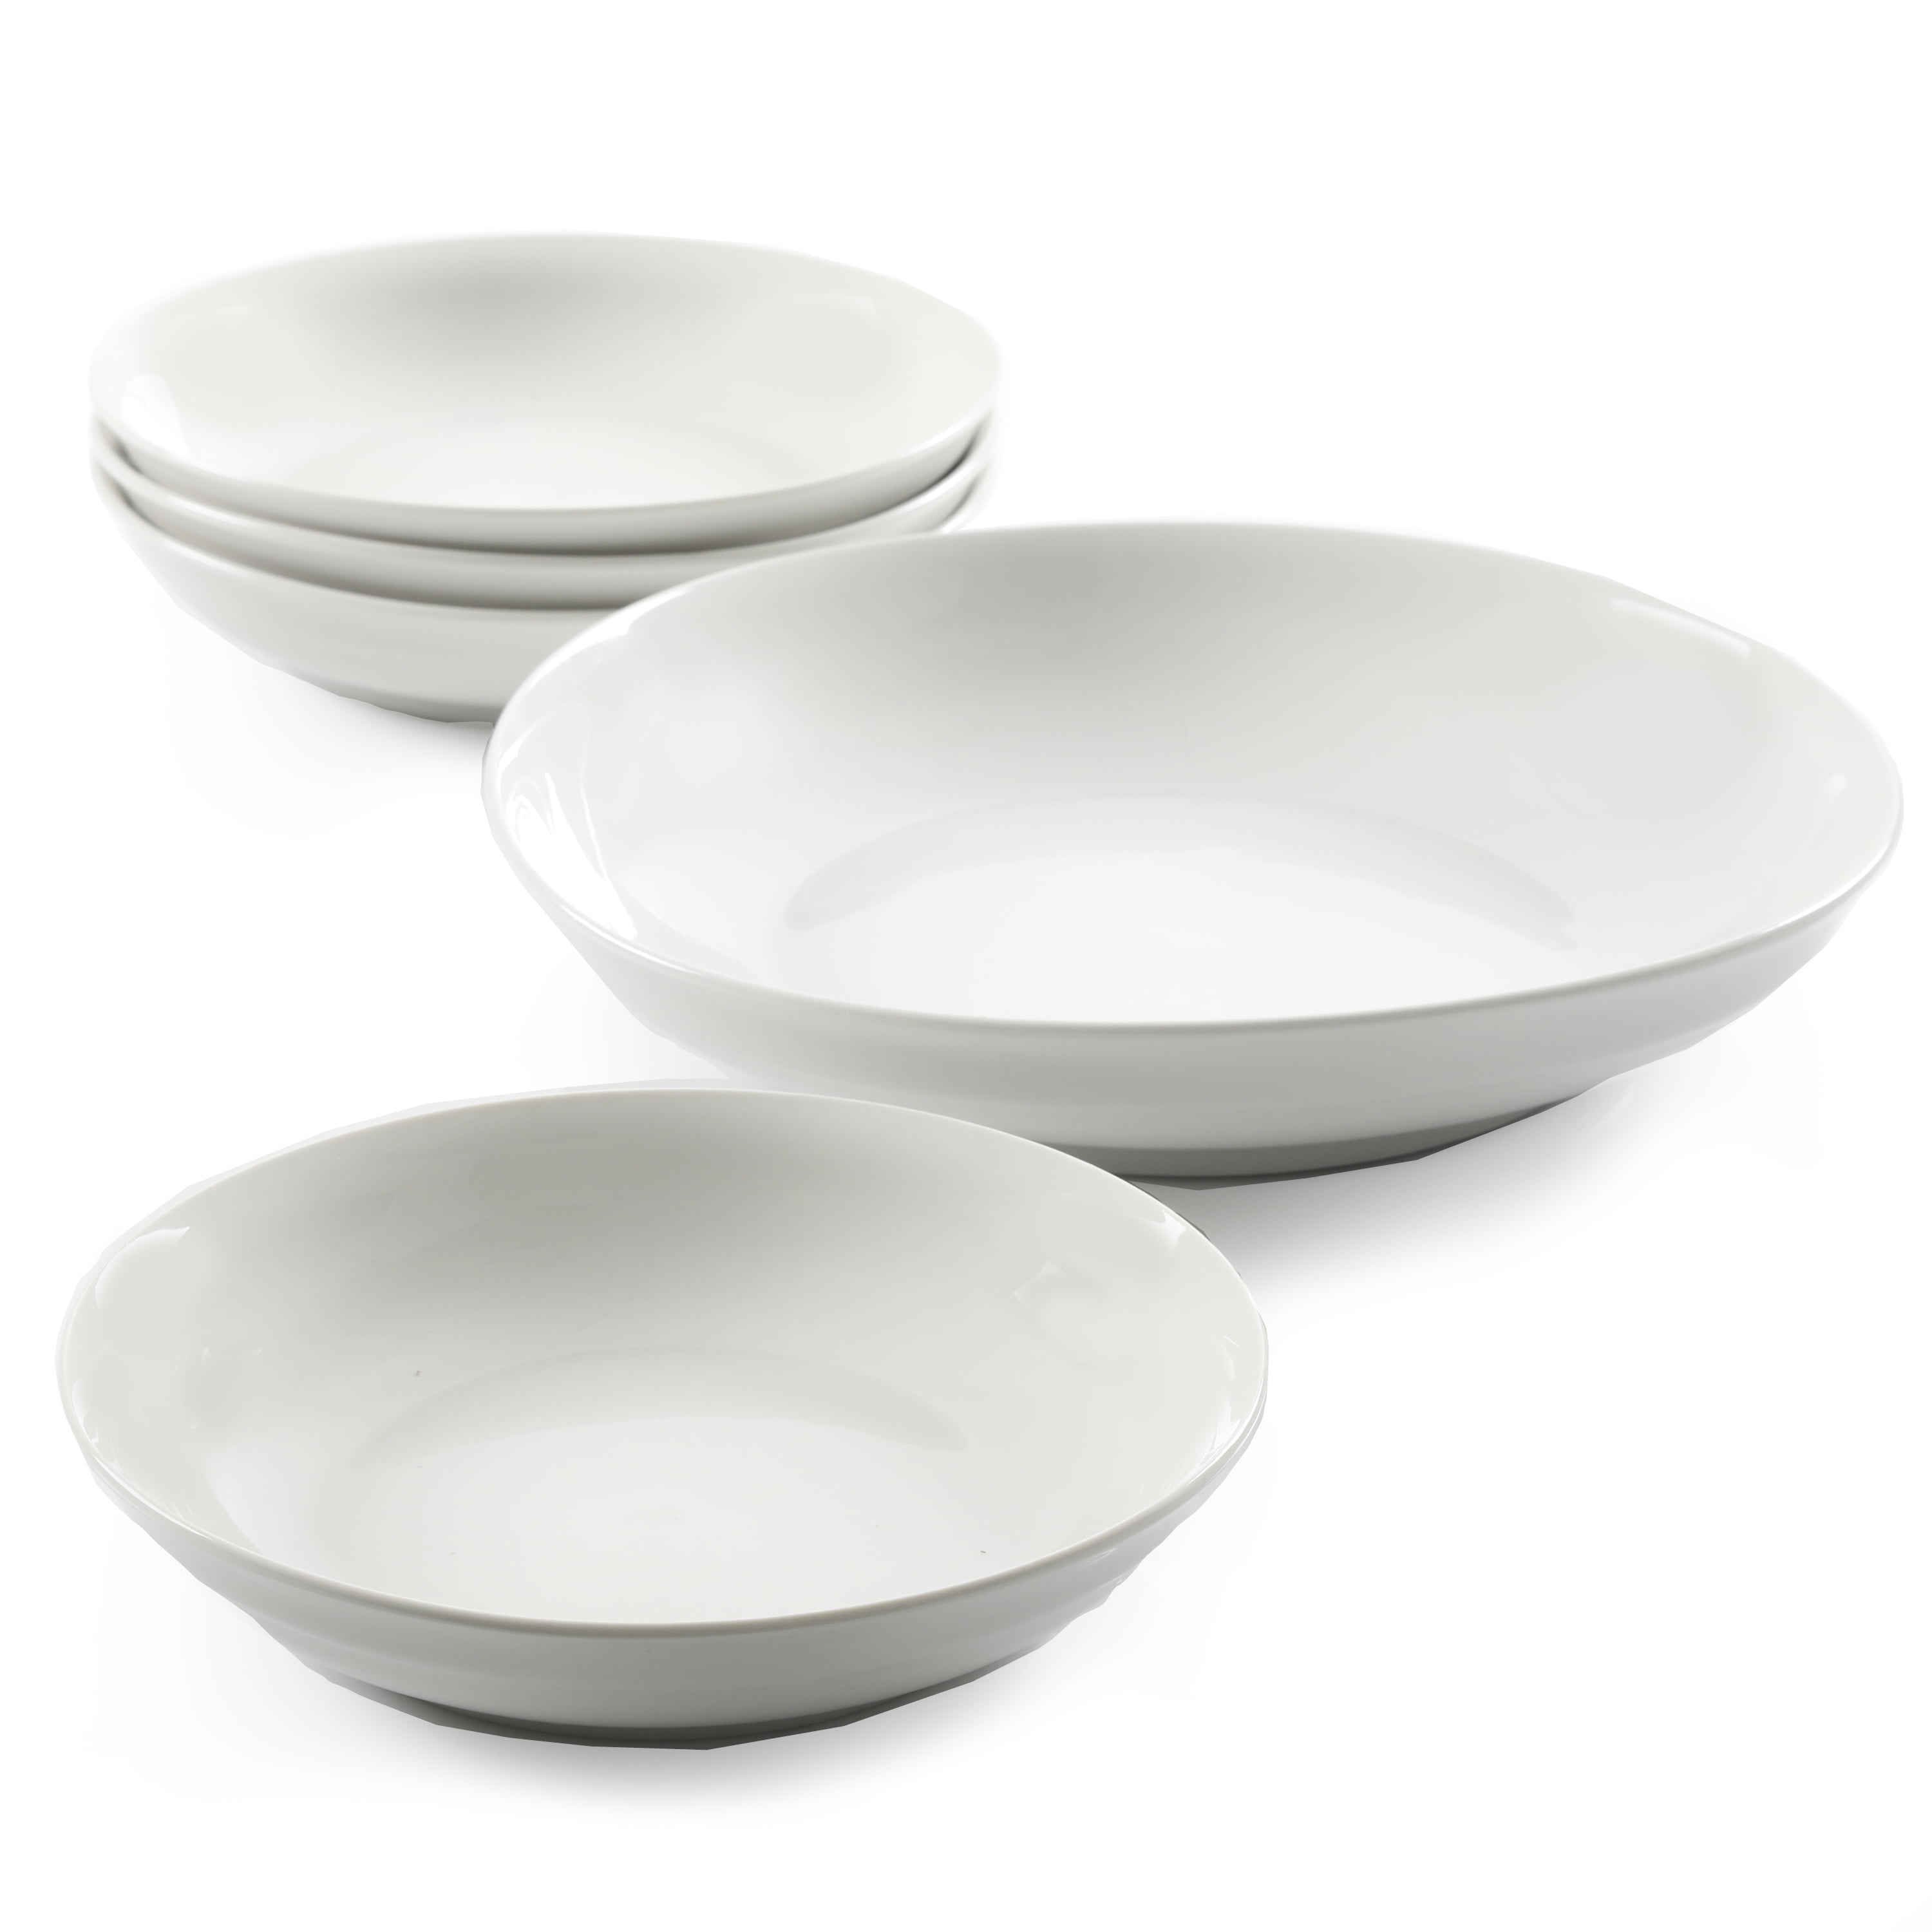 Gibson Home White Ceramic 2-Piece Pasta Bowl Set